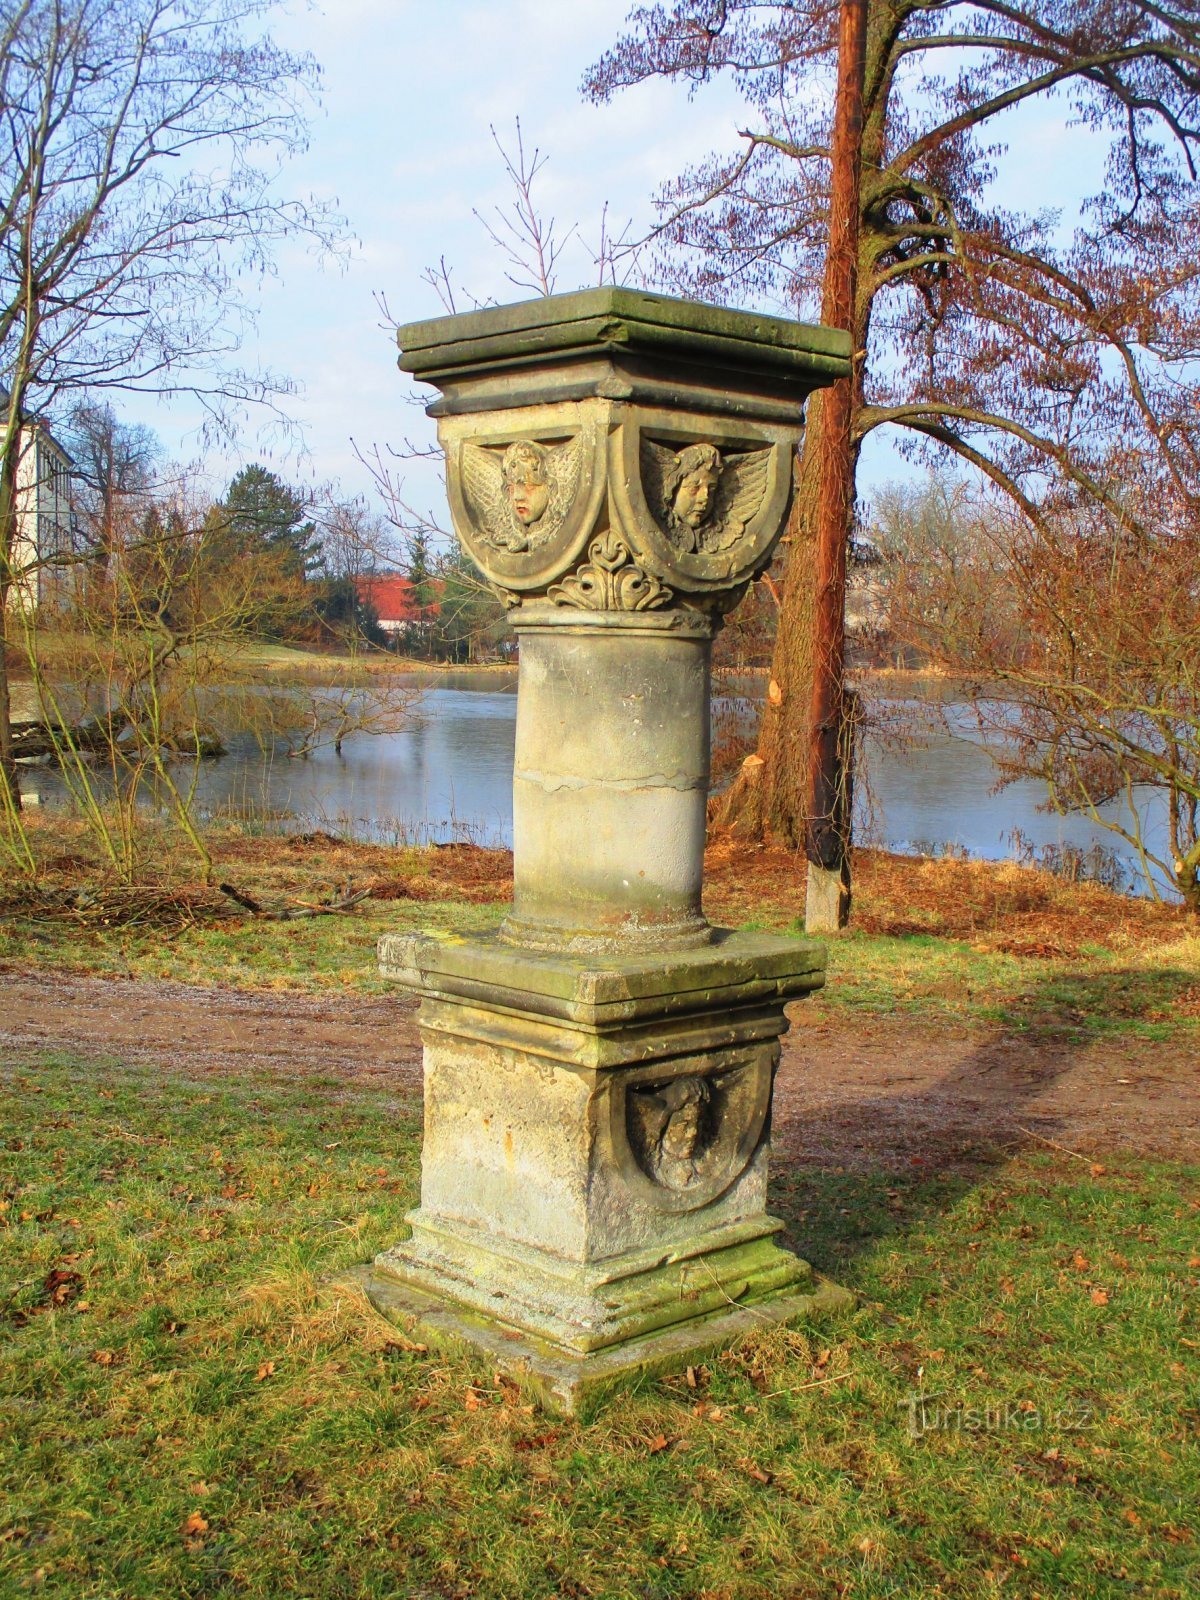 ザメツキー池の装飾柱 (コピドルノ、3.3.2022 年 XNUMX 月 XNUMX 日)